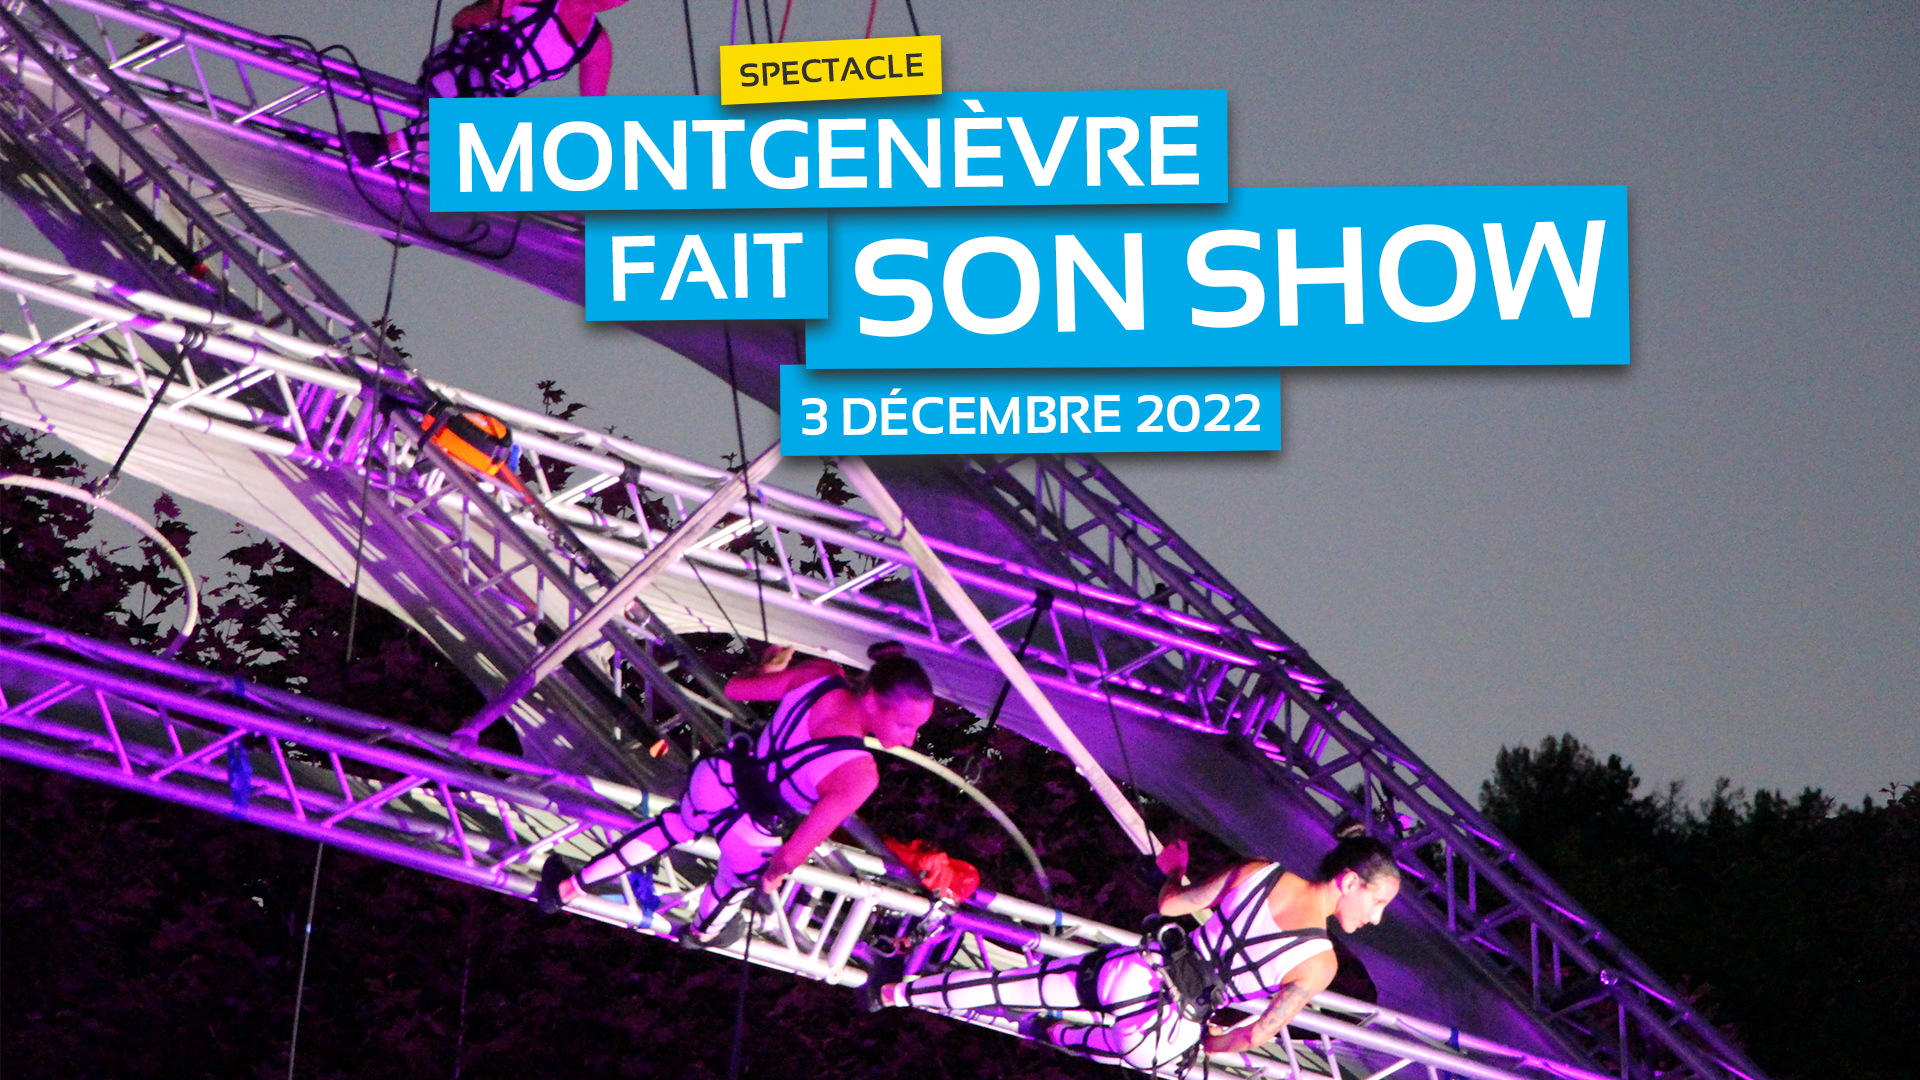 Montgenèvre fait son show le 3 décembre 2022